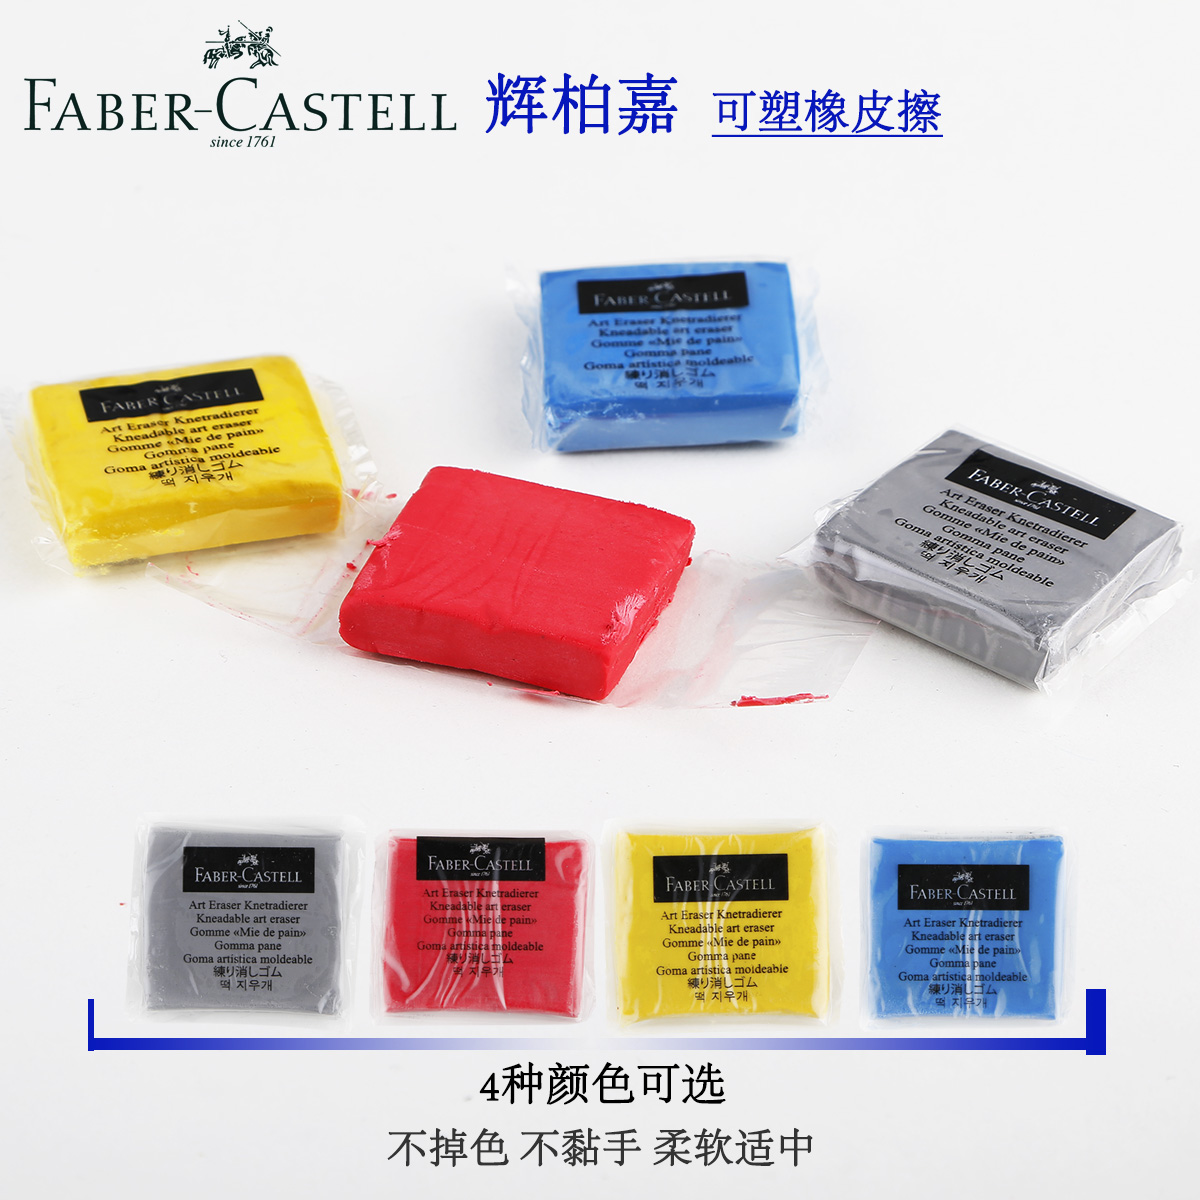 德国辉柏嘉FABER-CASTELL可塑橡皮|素描橡皮 四色可选 彩色折扣优惠信息